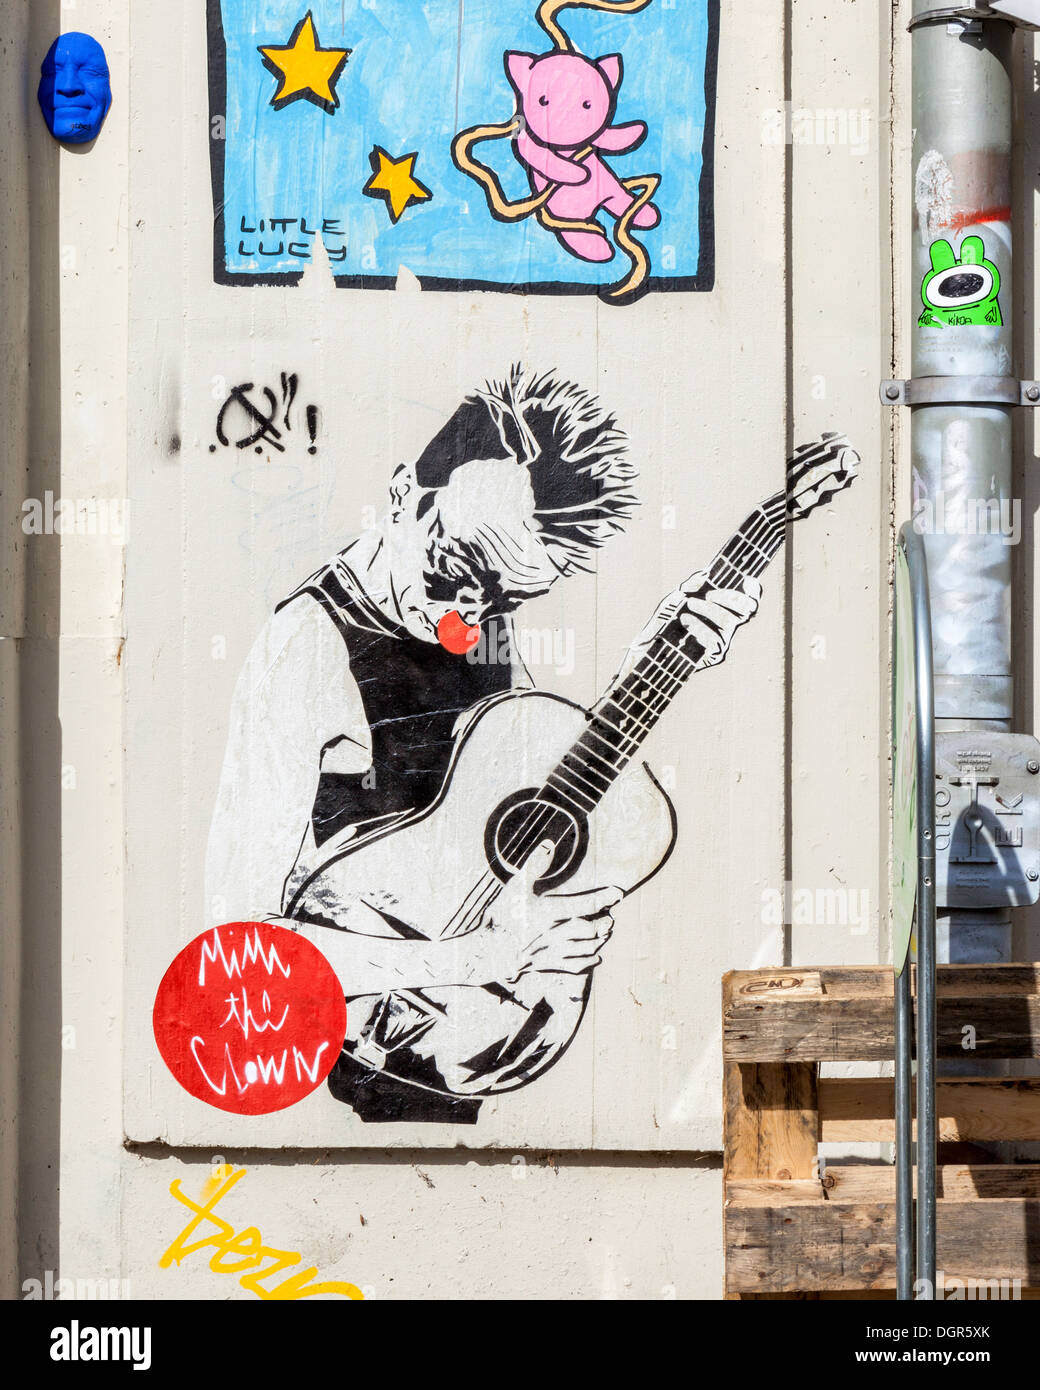 Streetart In Berlin - El Bocho (Little Lucy Cat Tötung Serie) - Mimi der Clown (rote Nase Clown und Gitarre) Stockfoto